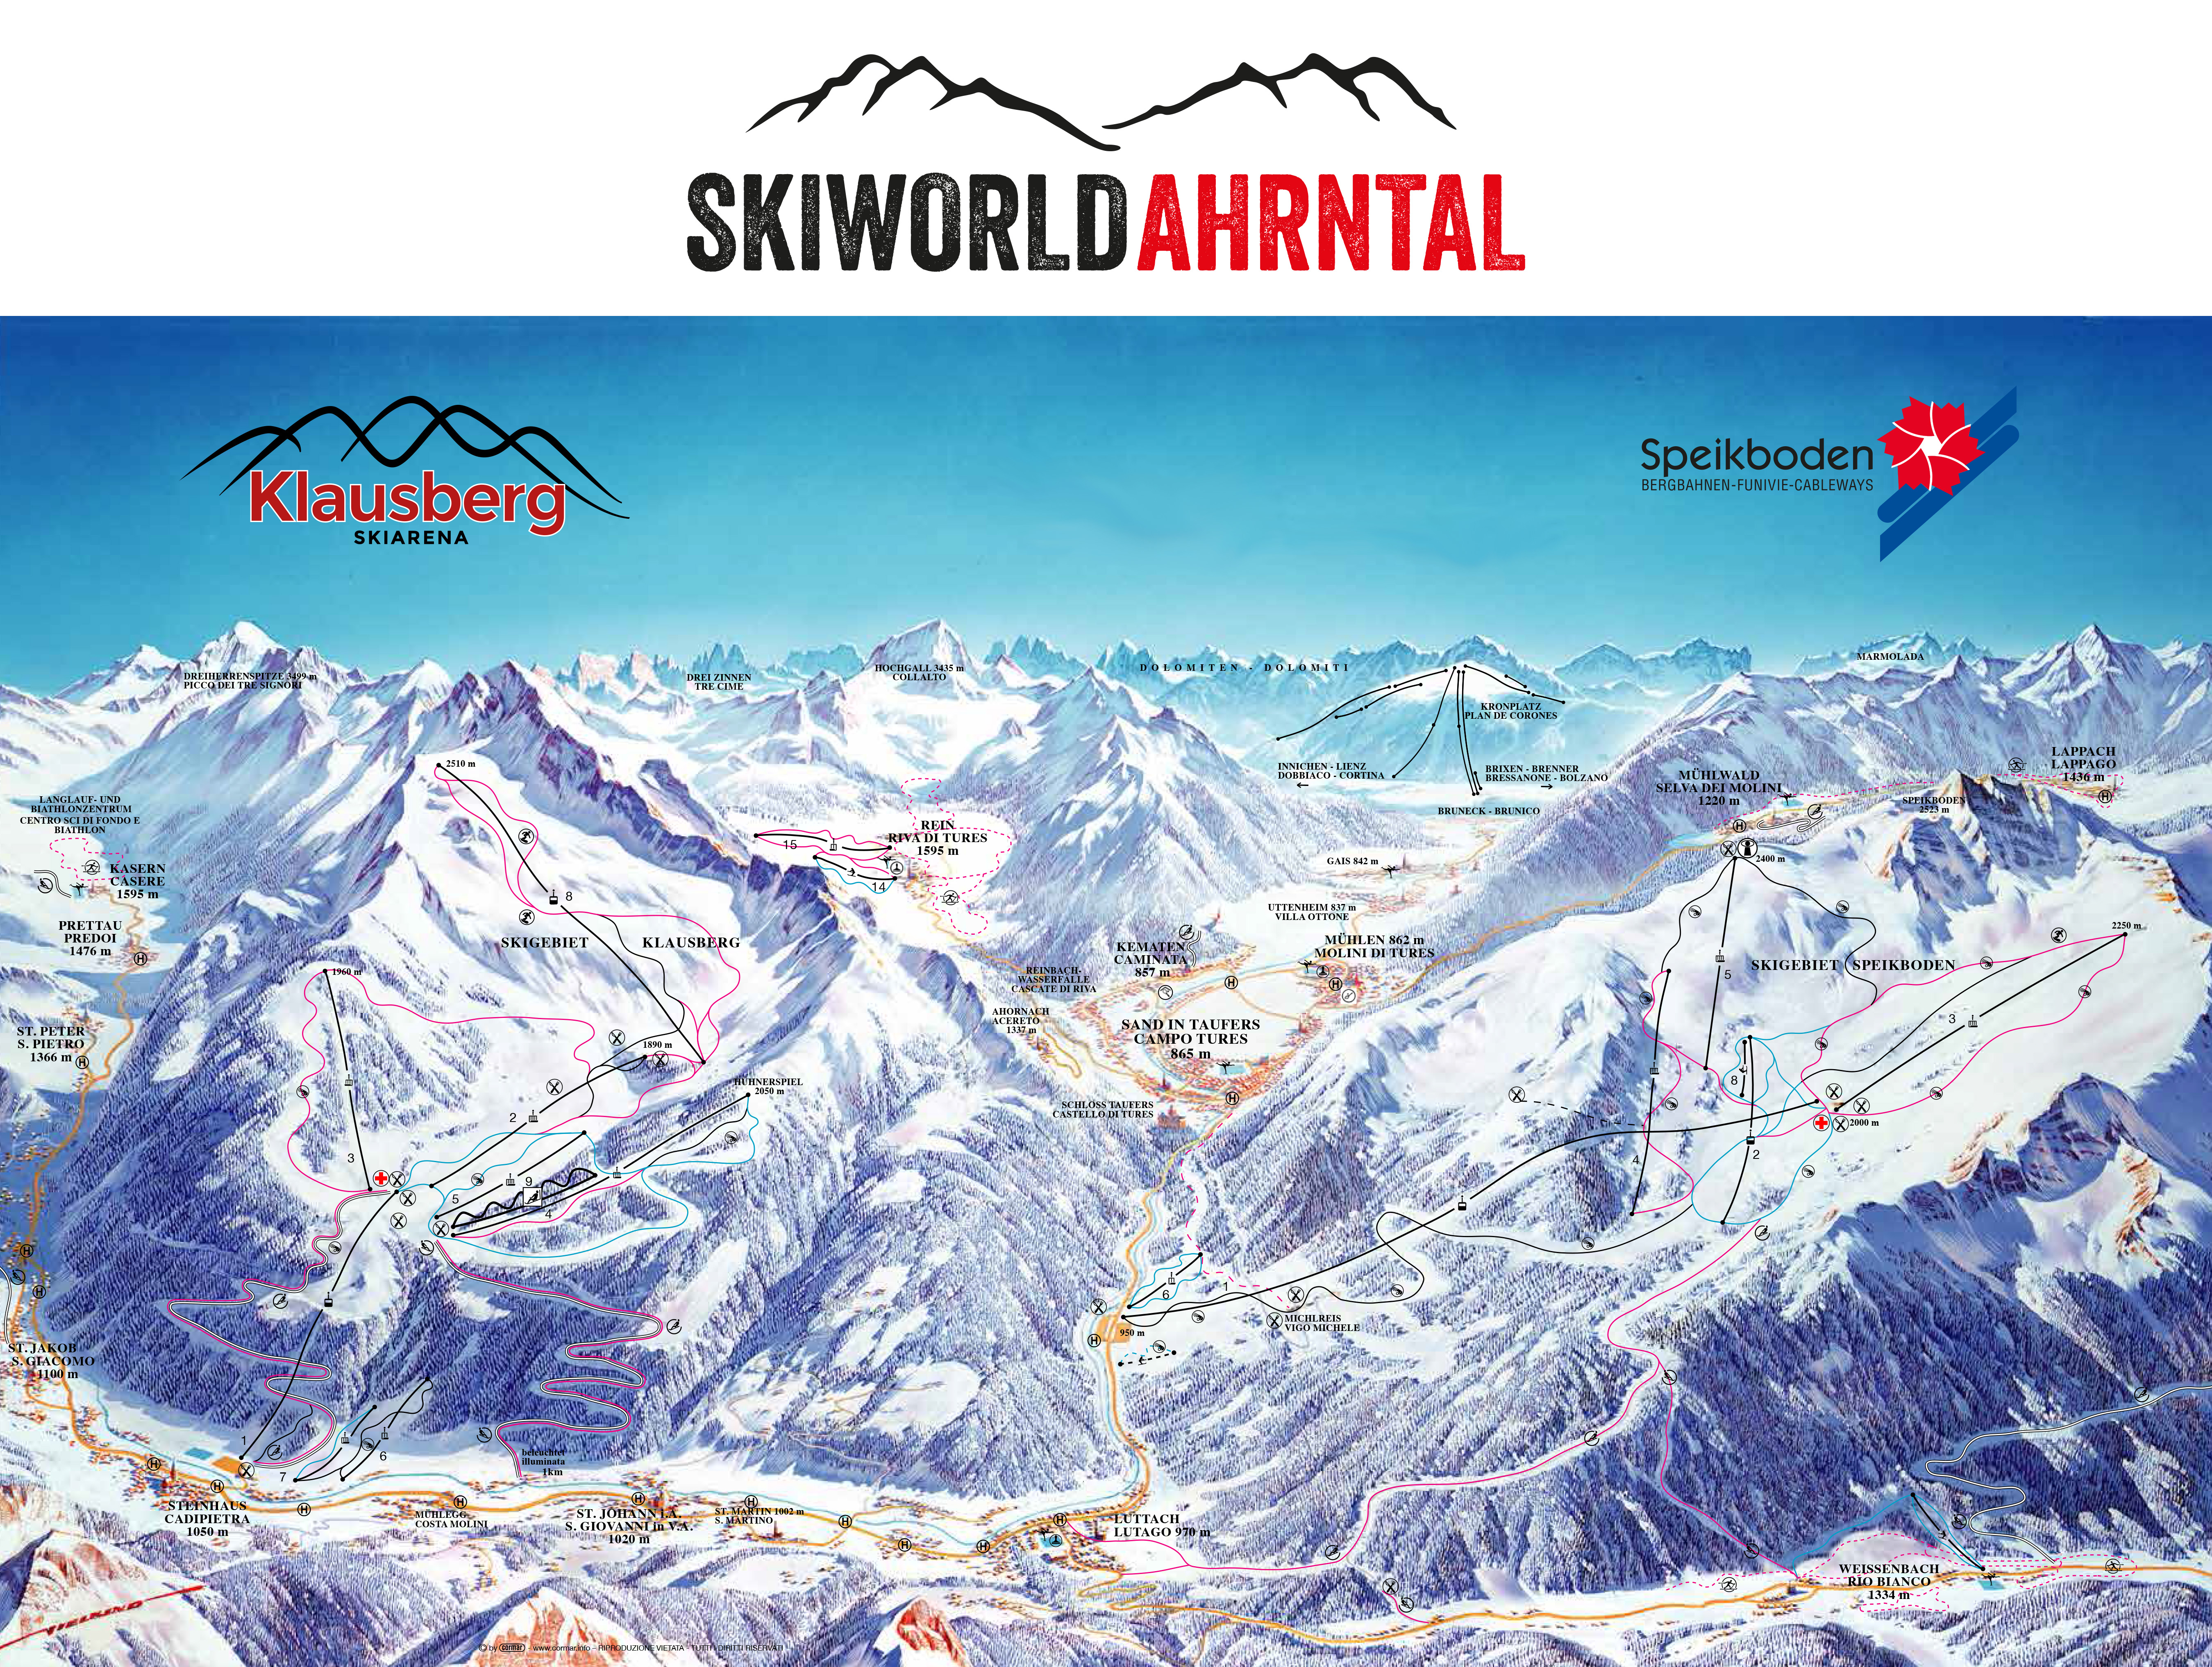 Skiworld Ahrntal